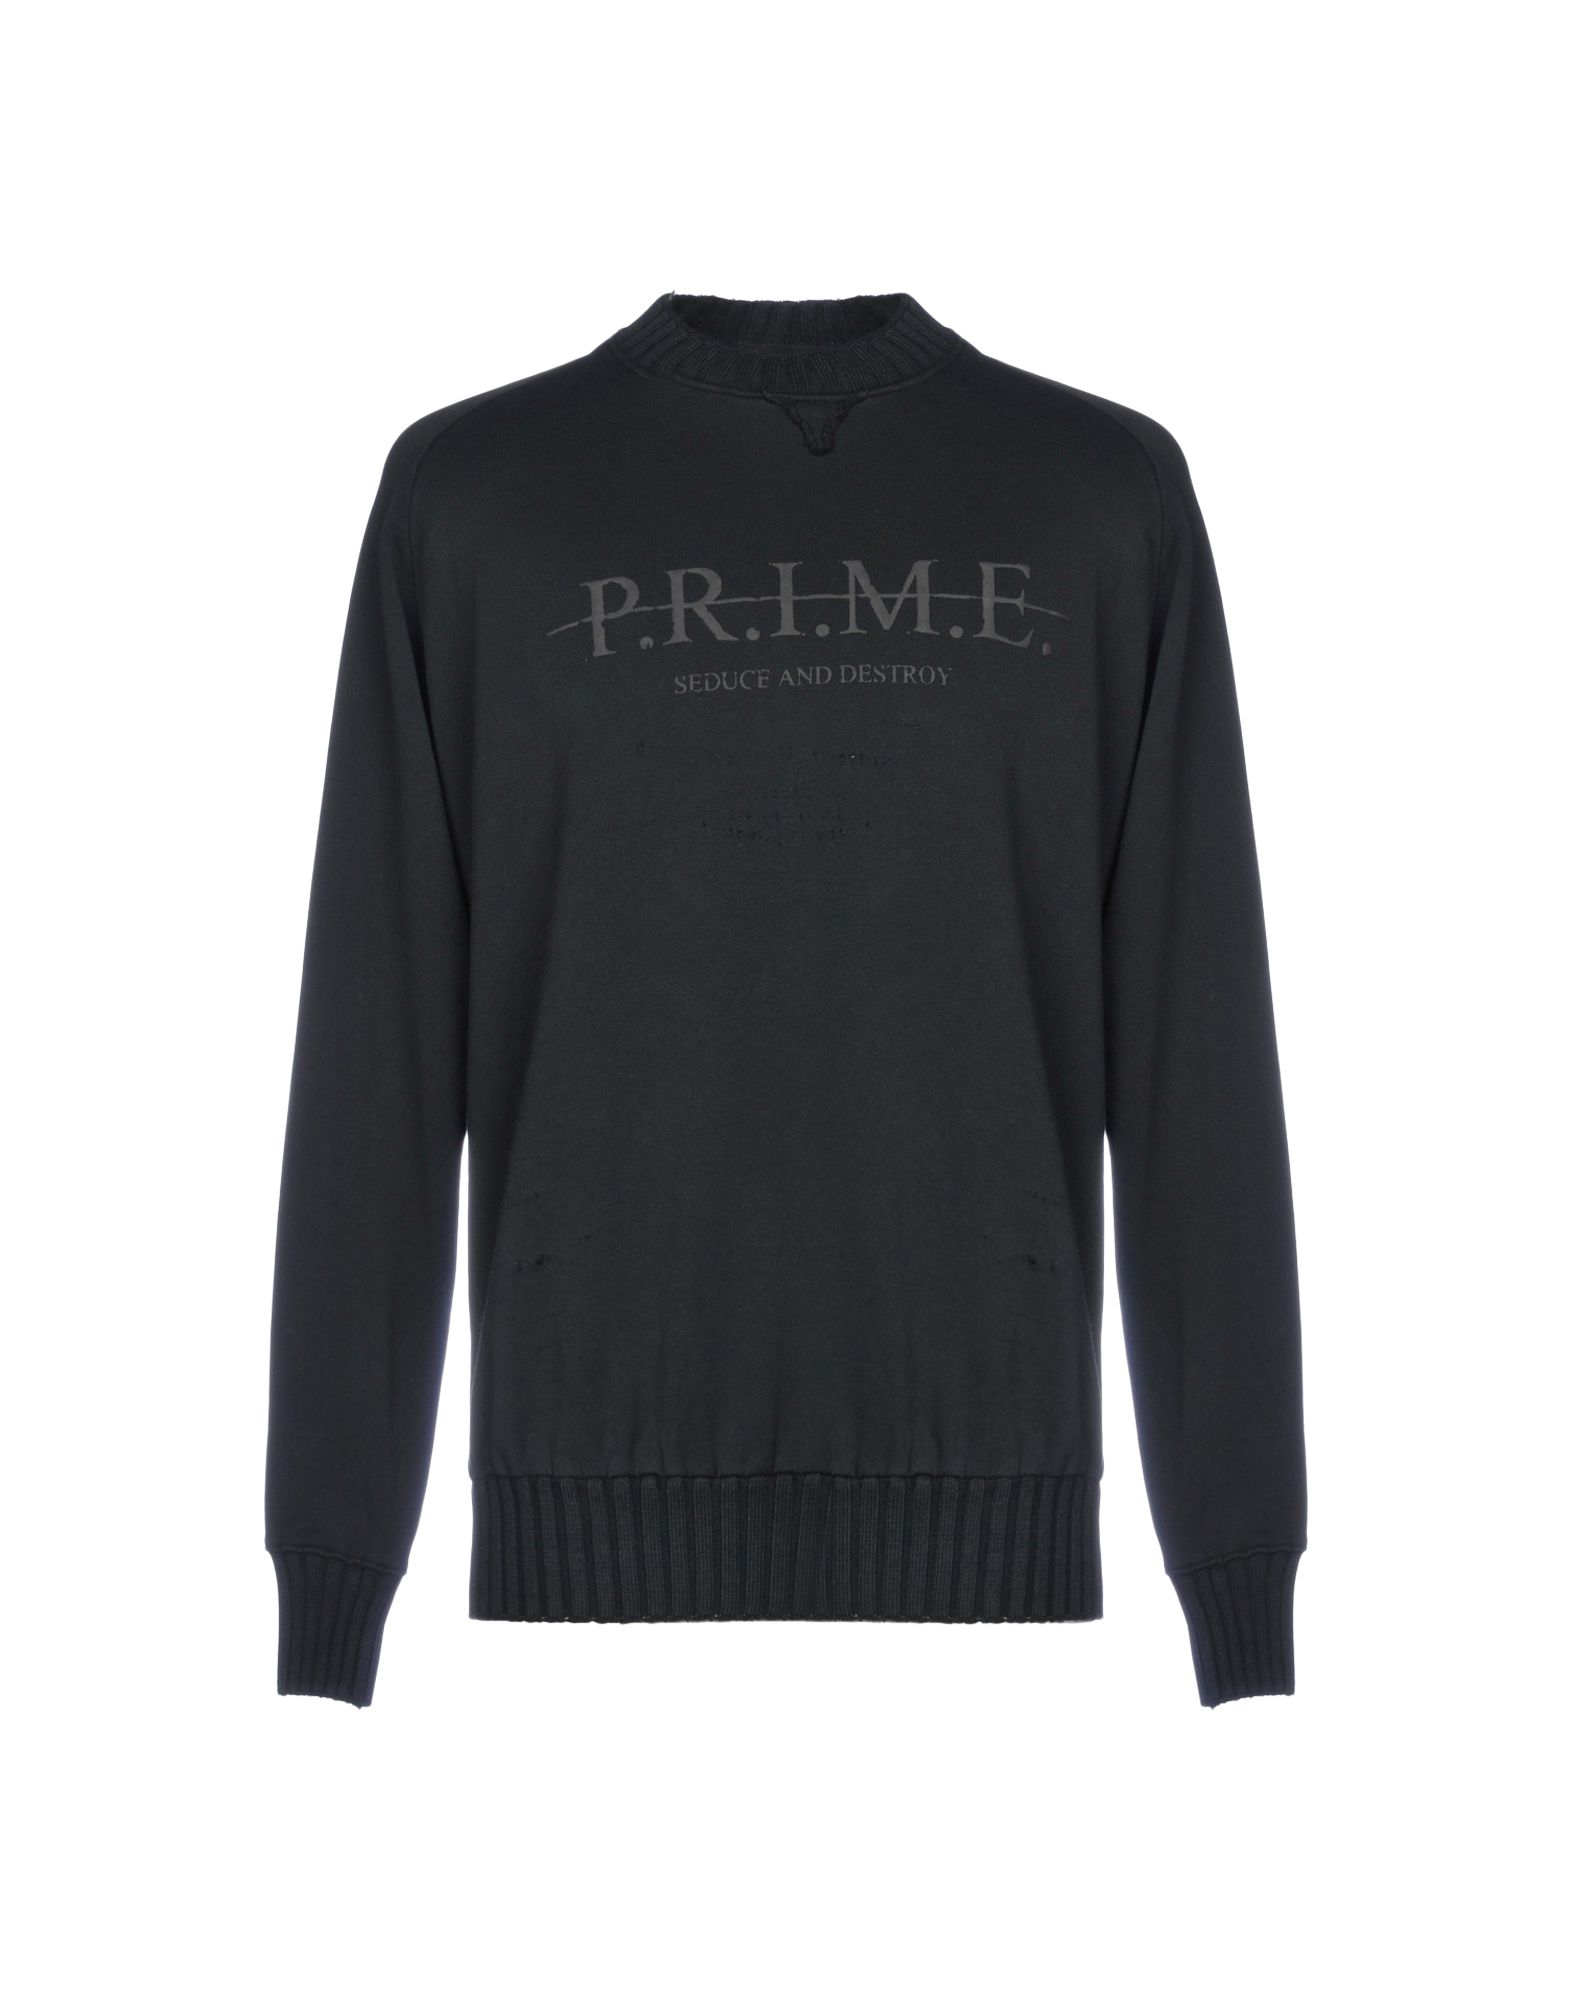 《送料無料》P.R.I.M.E. メンズ スウェットシャツ ブラック L コットン 100%